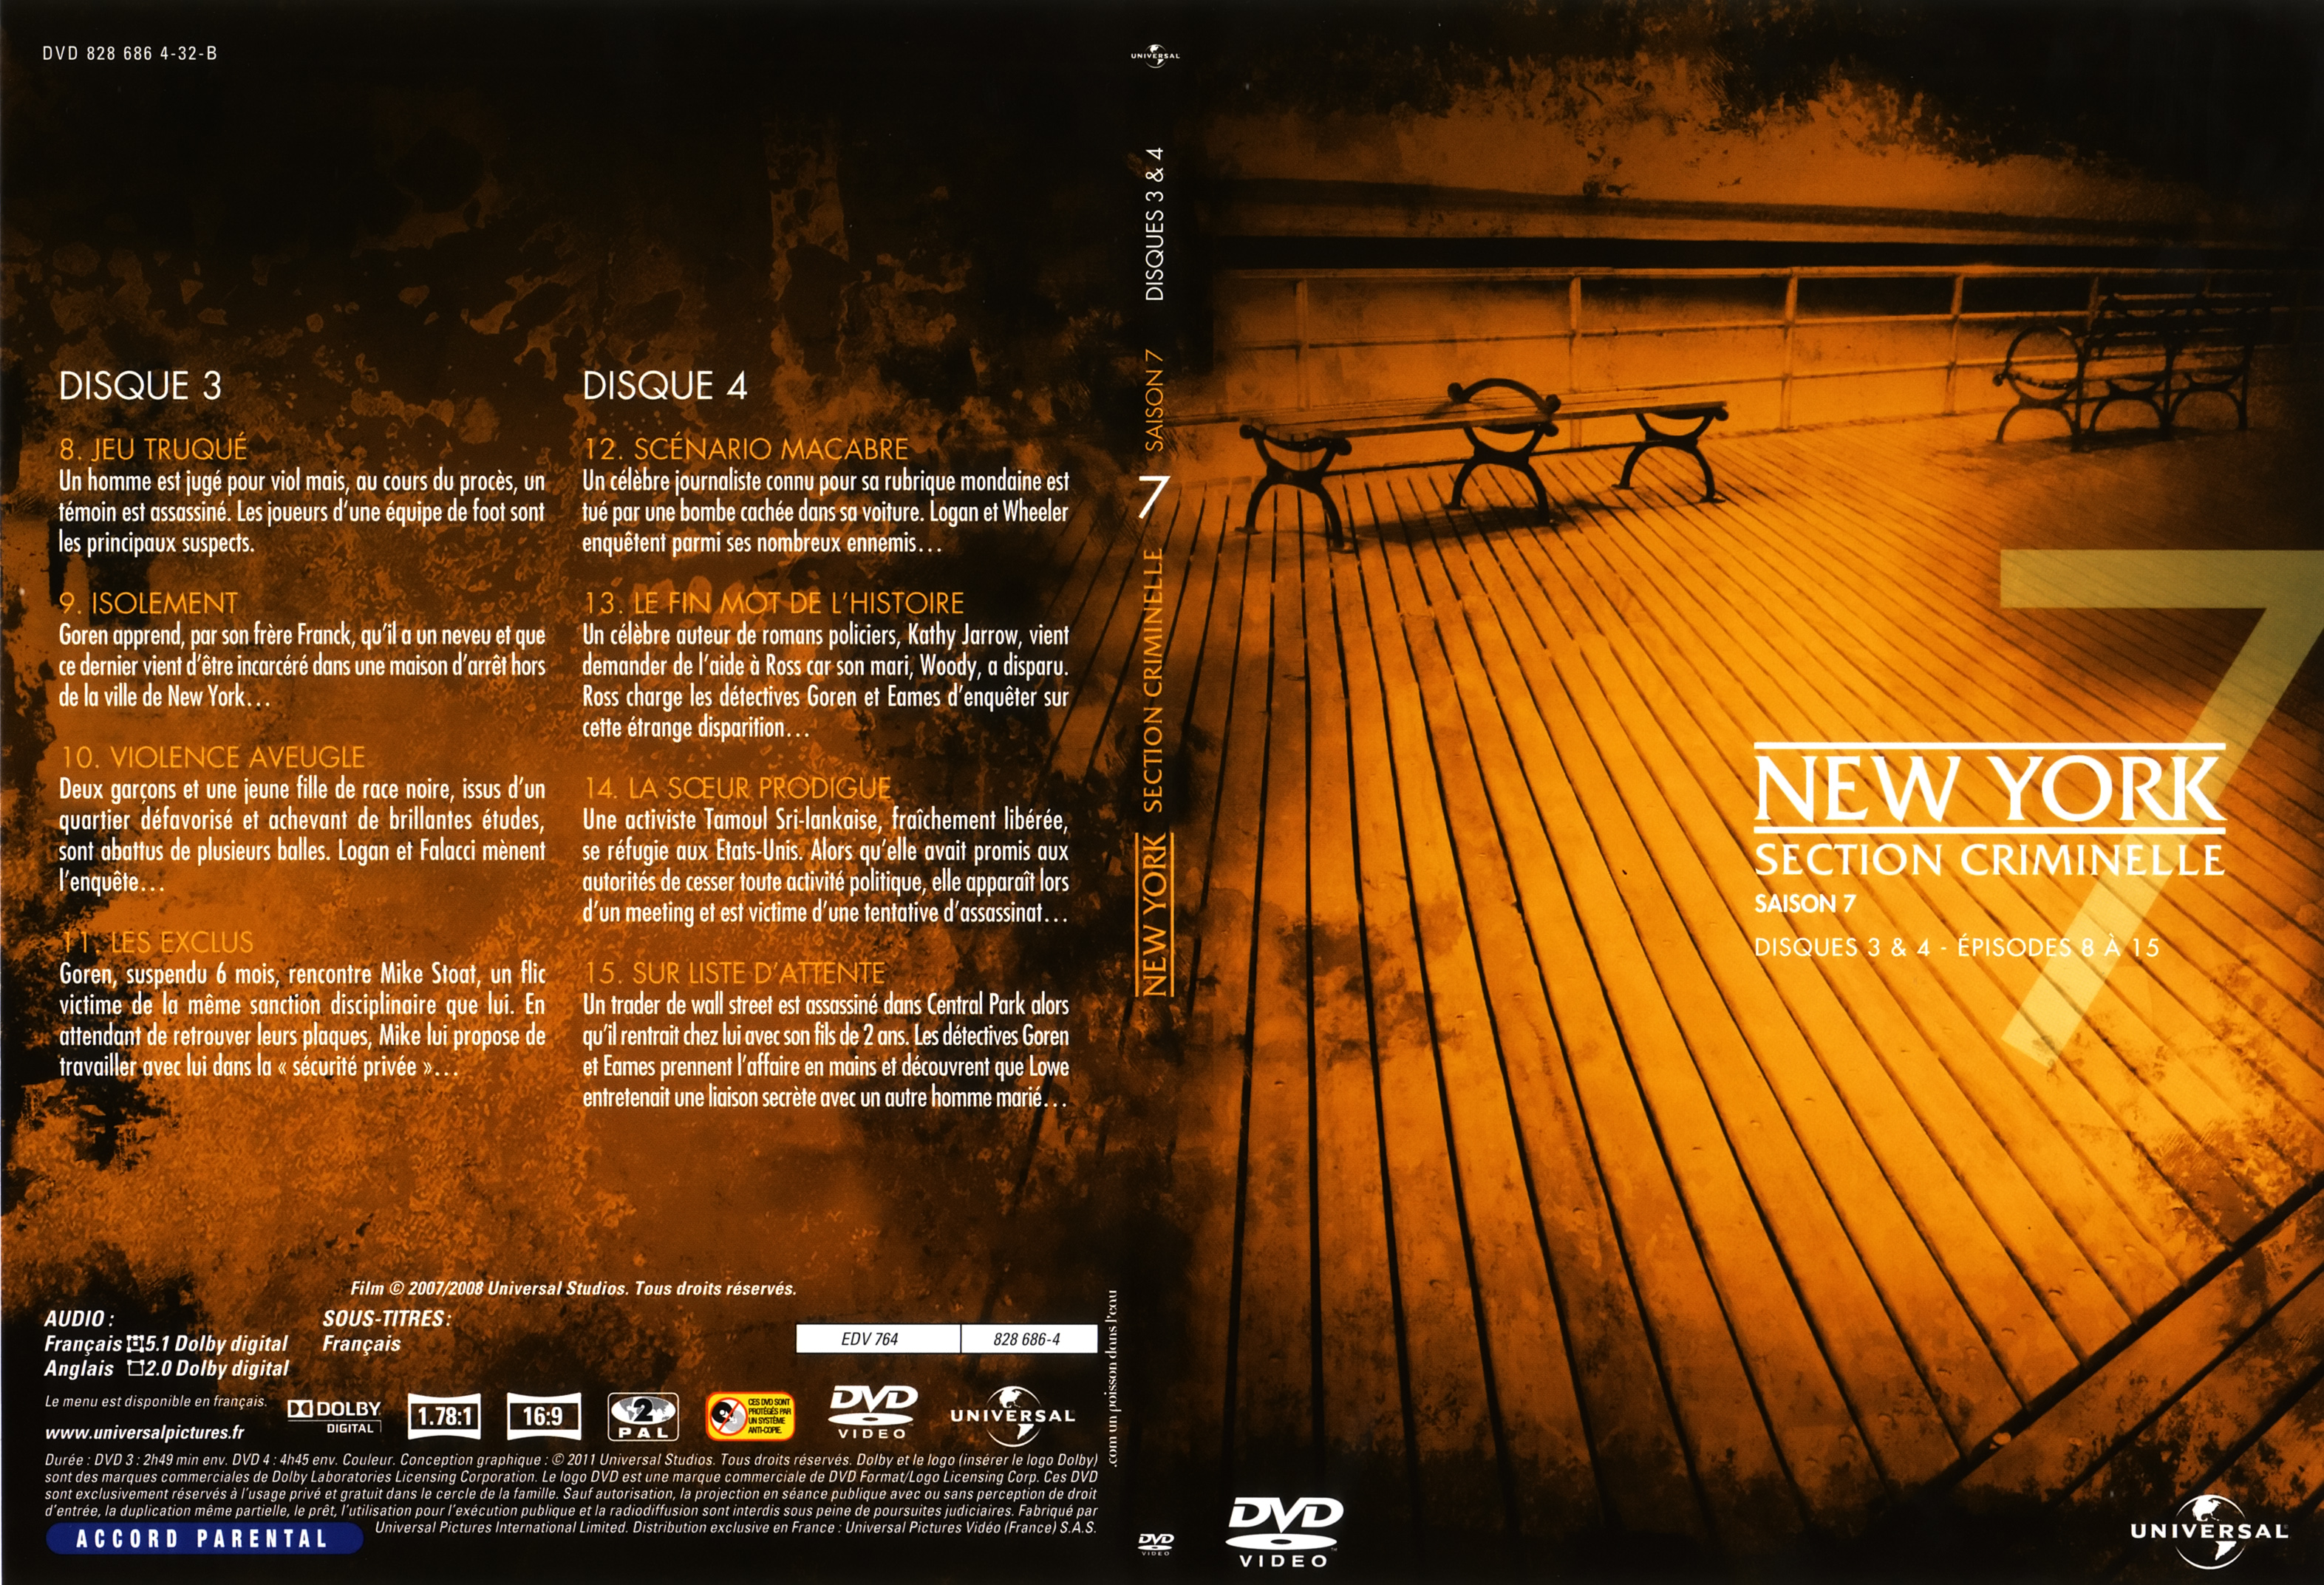 Jaquette DVD New York section criminelle saison 7 DVD 2